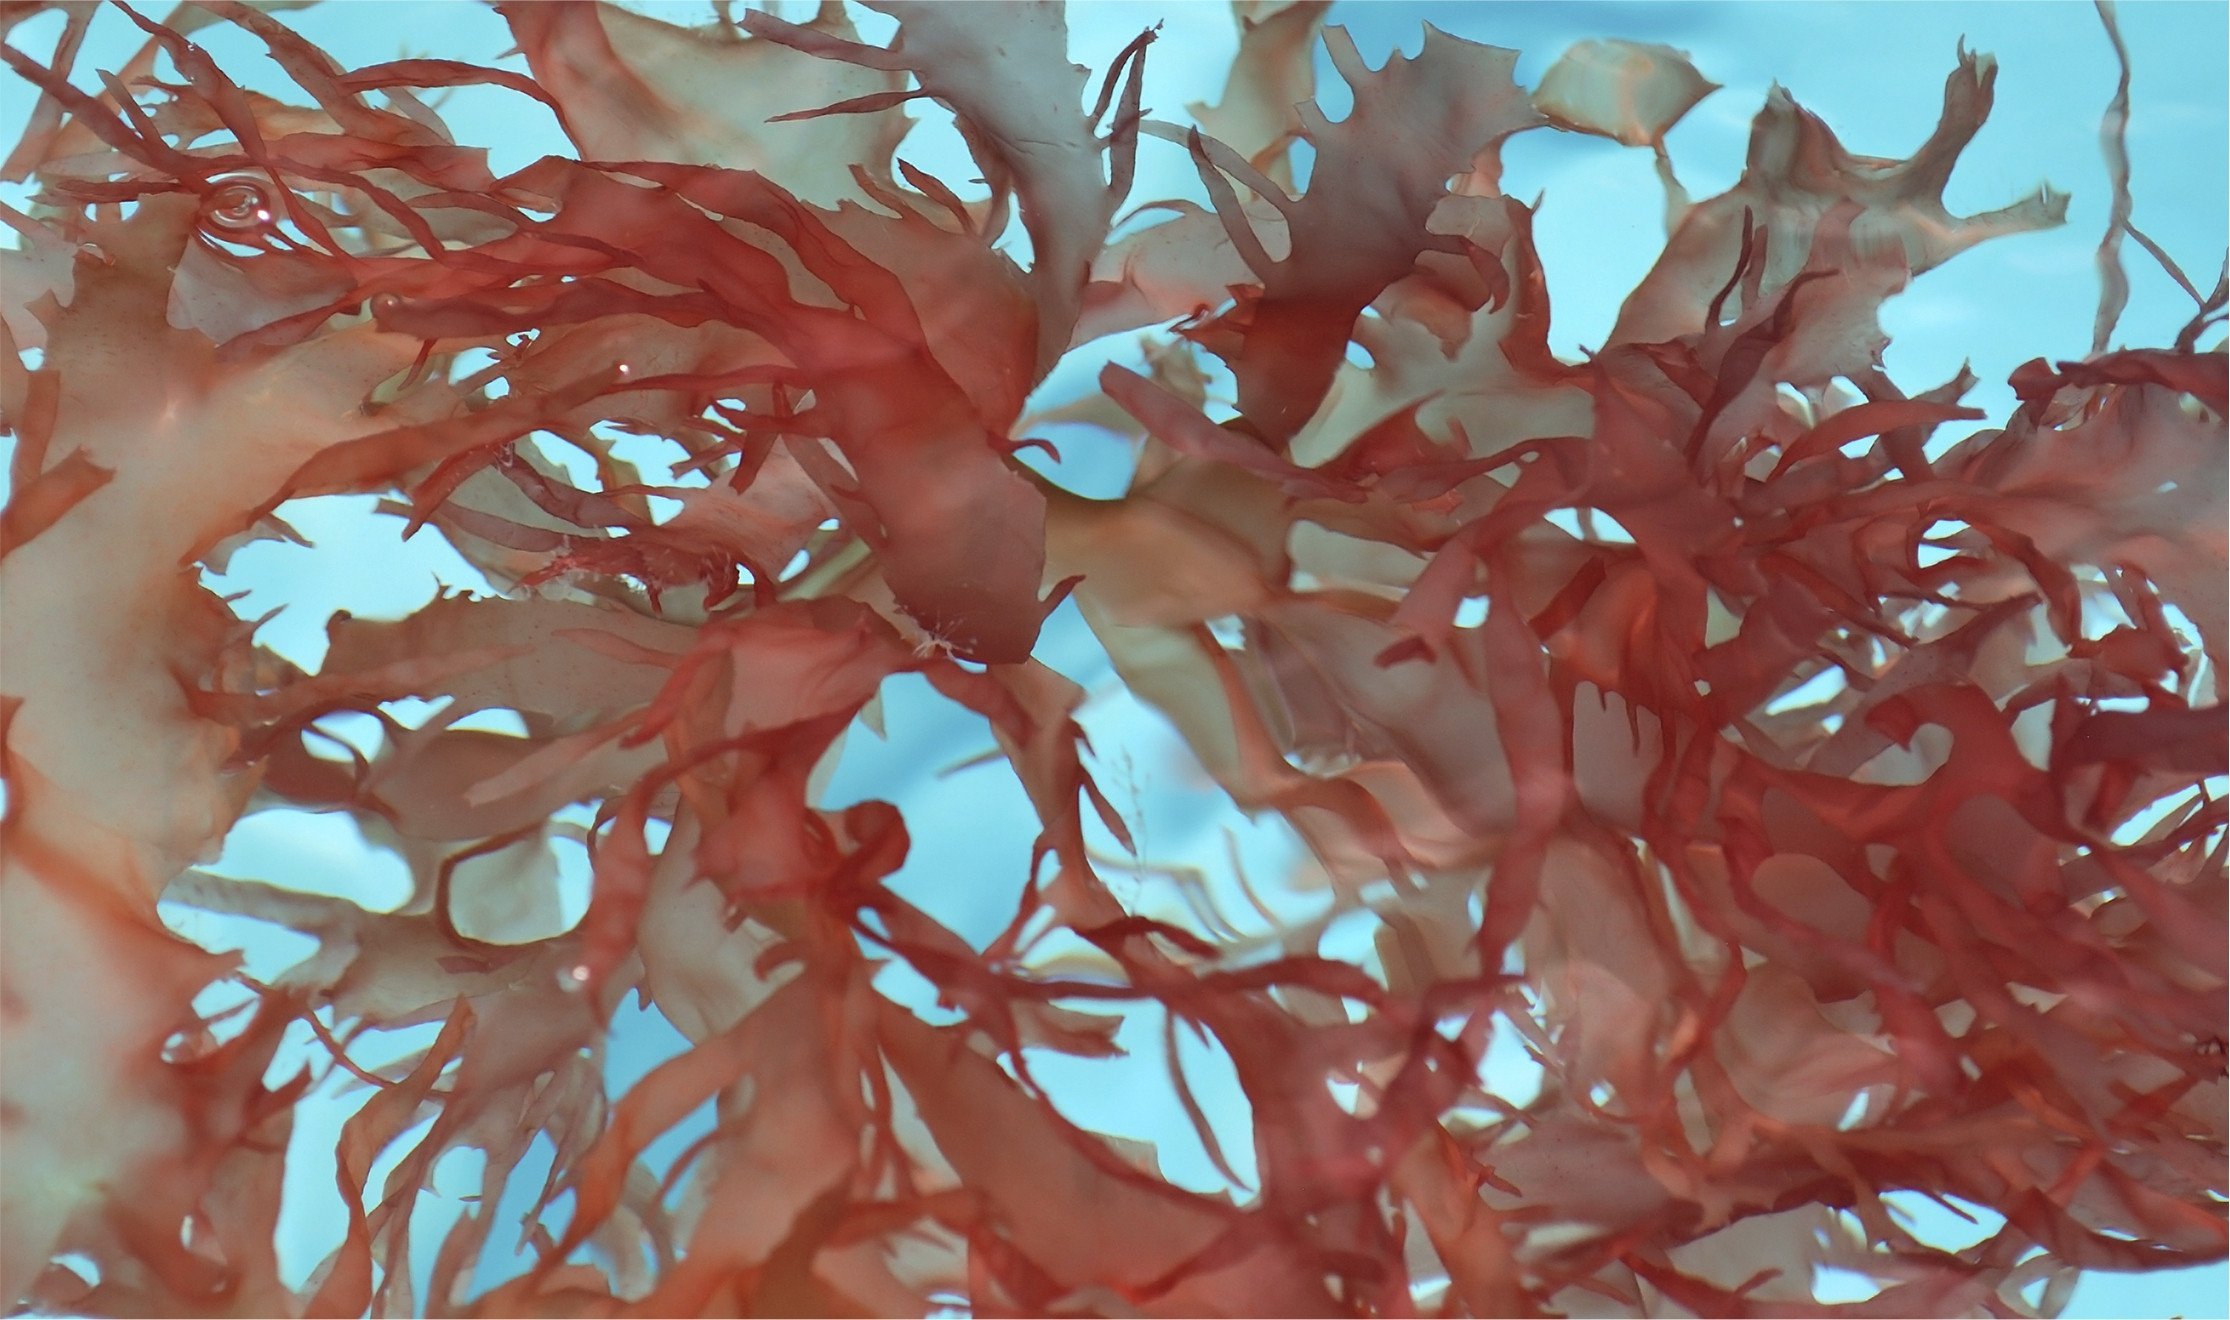 Филлофора водоросль. Родимения водоросль. Красные водоросли Филлофора. Филлофора черного моря. 2 название красных водорослей